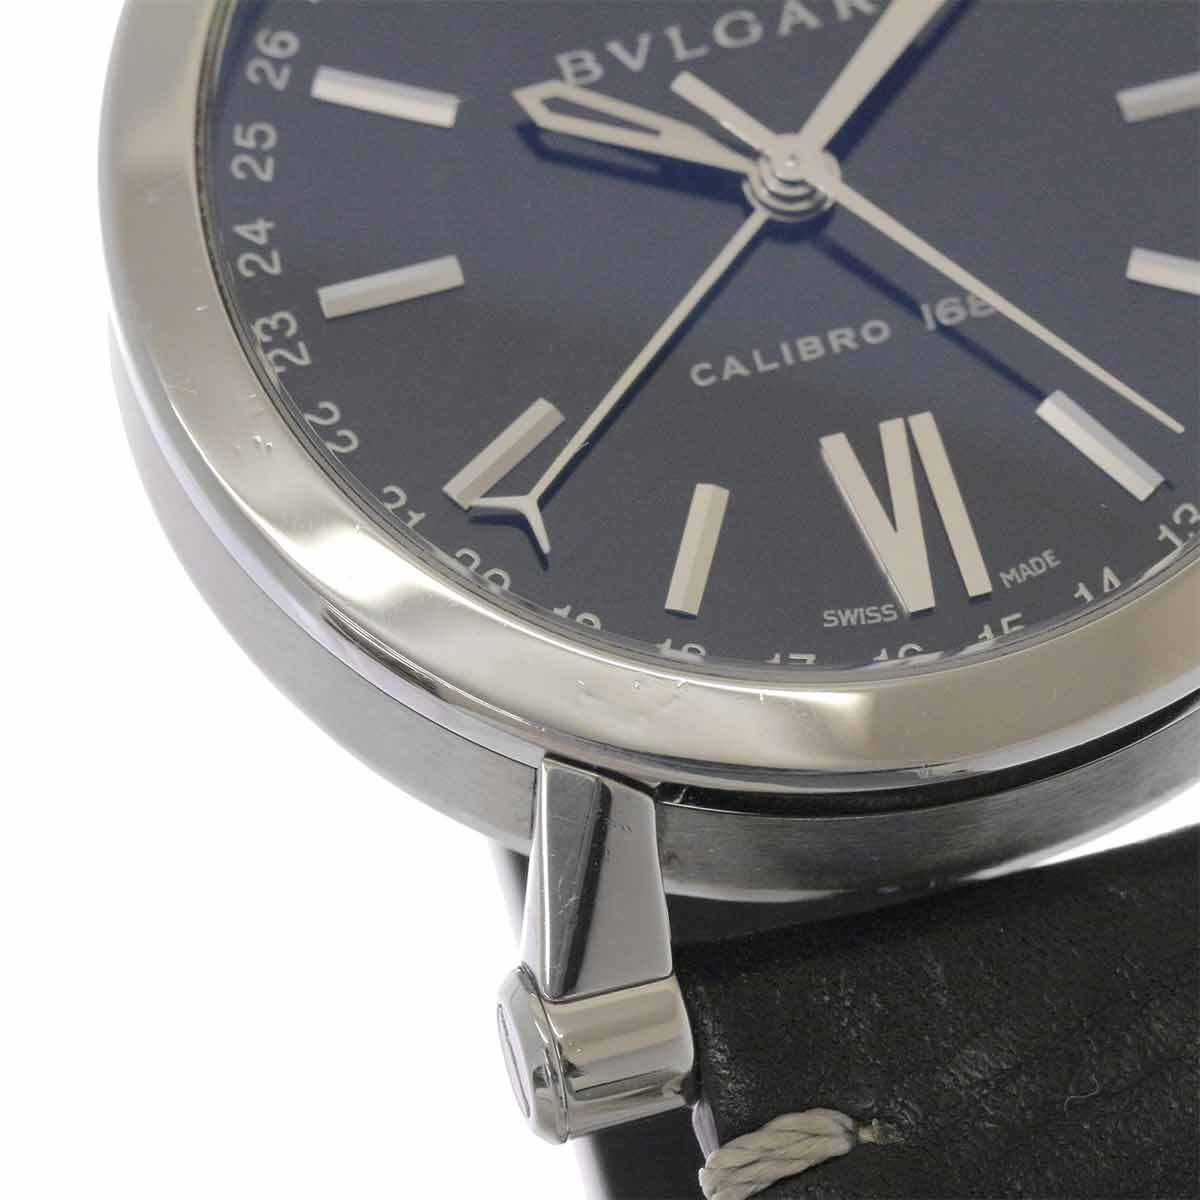 ブルガリ BVLGARI ソティリオ カリブロ SB43S メンズ 腕時計 デイト ブラック 文字盤 裏スケルトン 自動巻き Sotirio 90227960_画像7